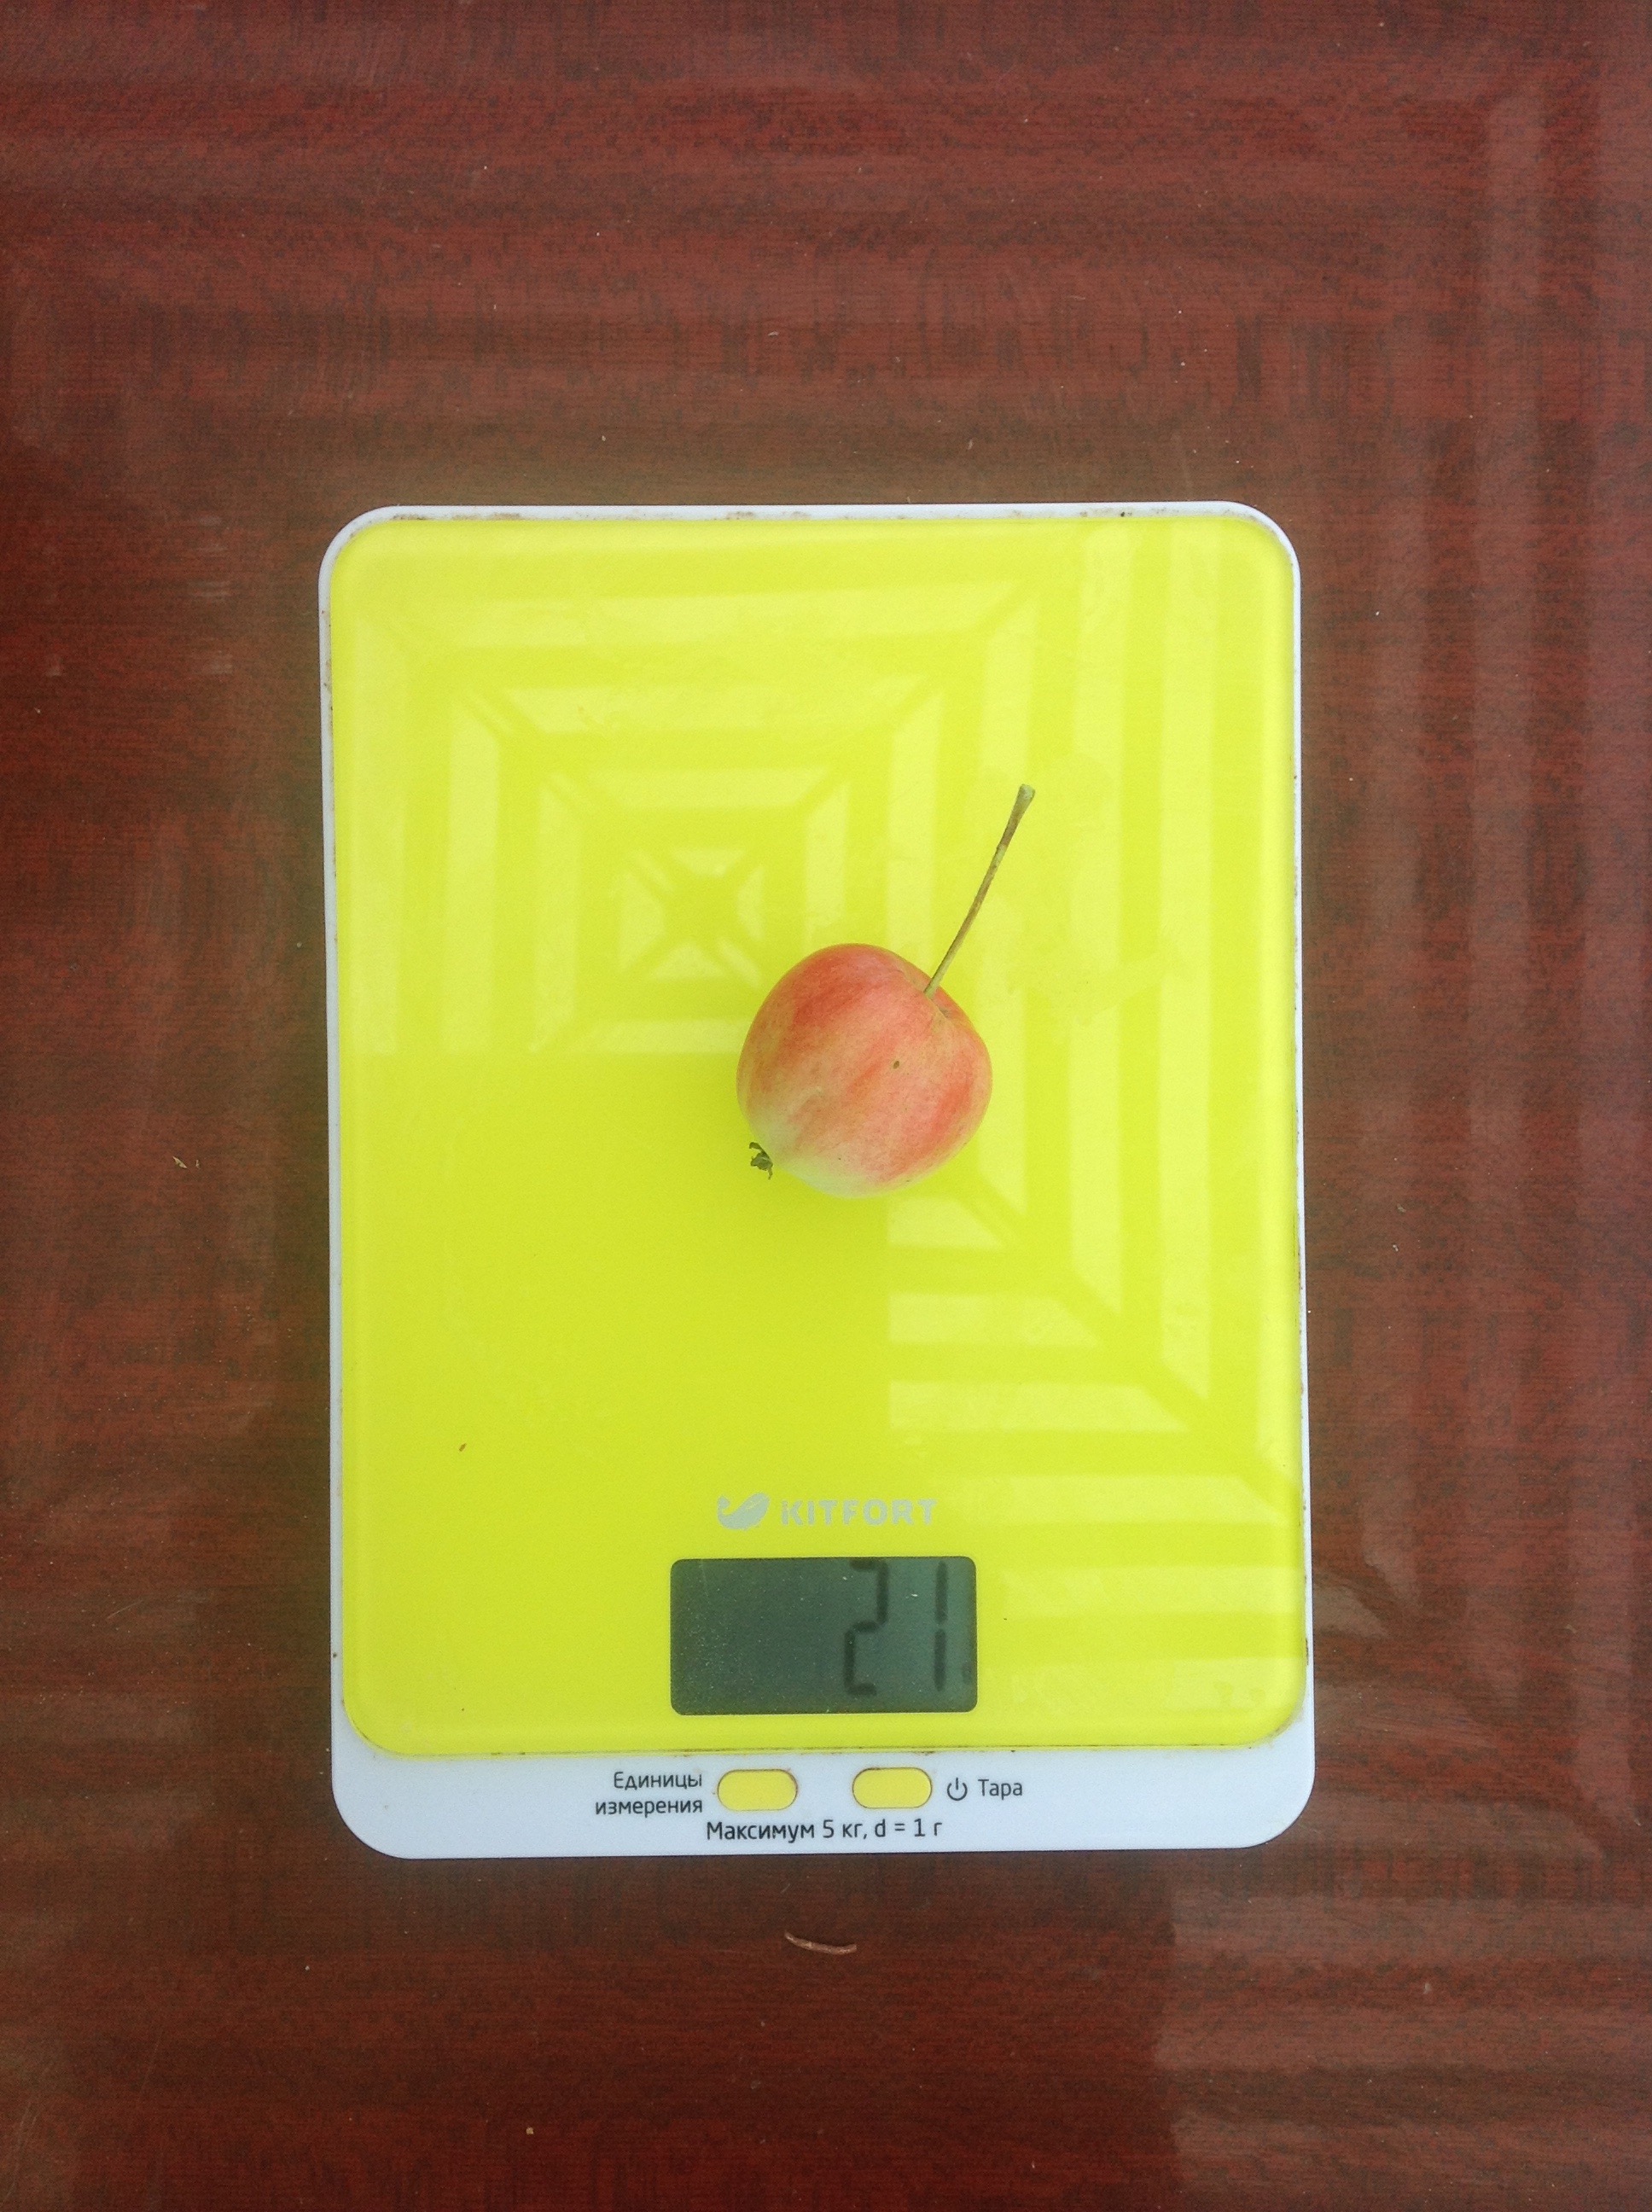 Gewicht eines kleinen Obstgartenapfels